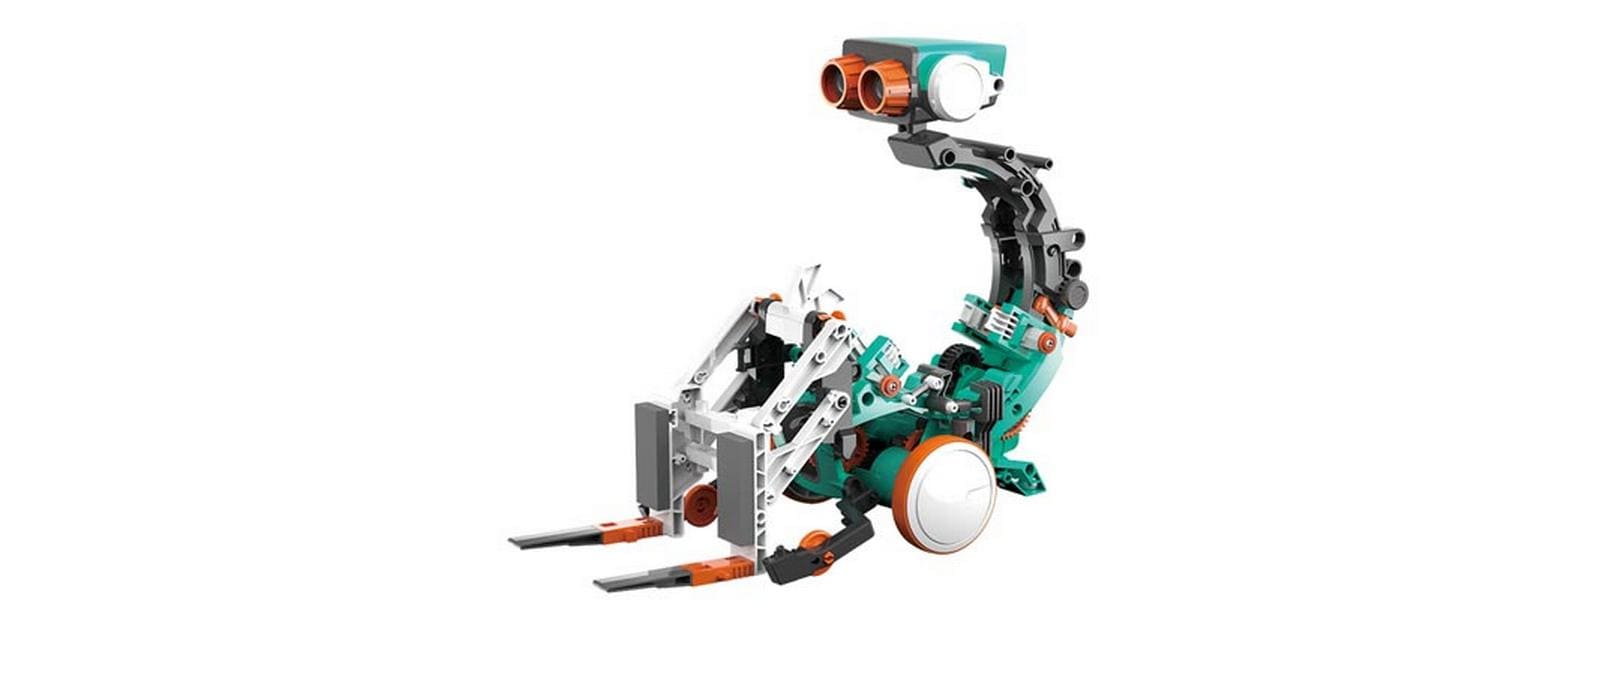 Velleman Roboter 5-in-1 Bausatz